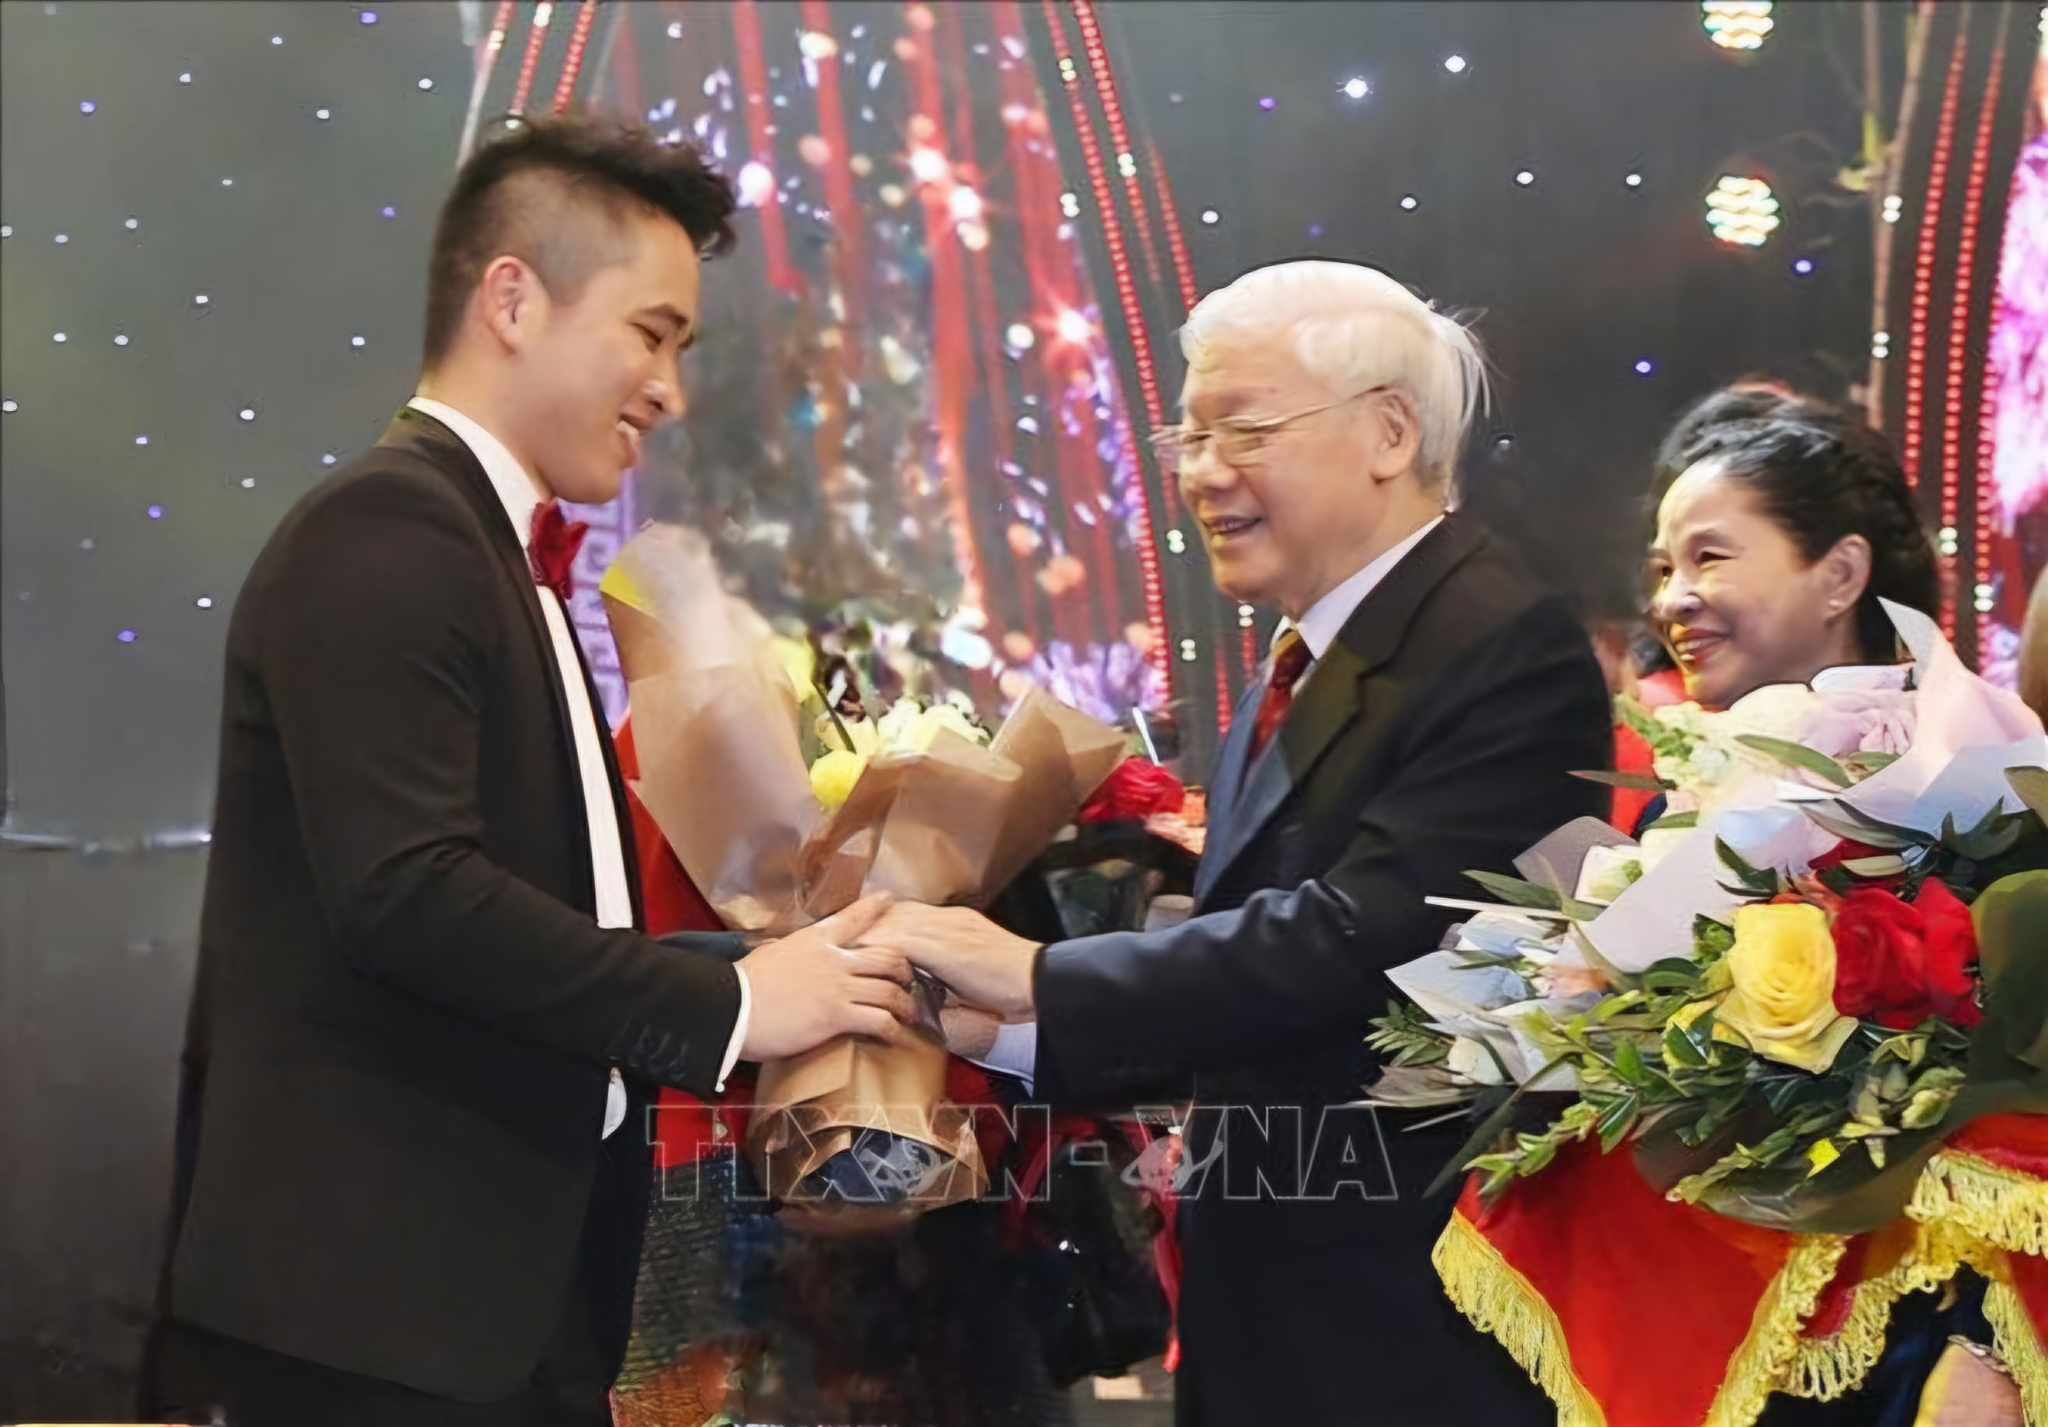 Người Ninh Bình ở nước ngoài thương tiếc Tổng Bí thư Nguyễn Phú Trọng